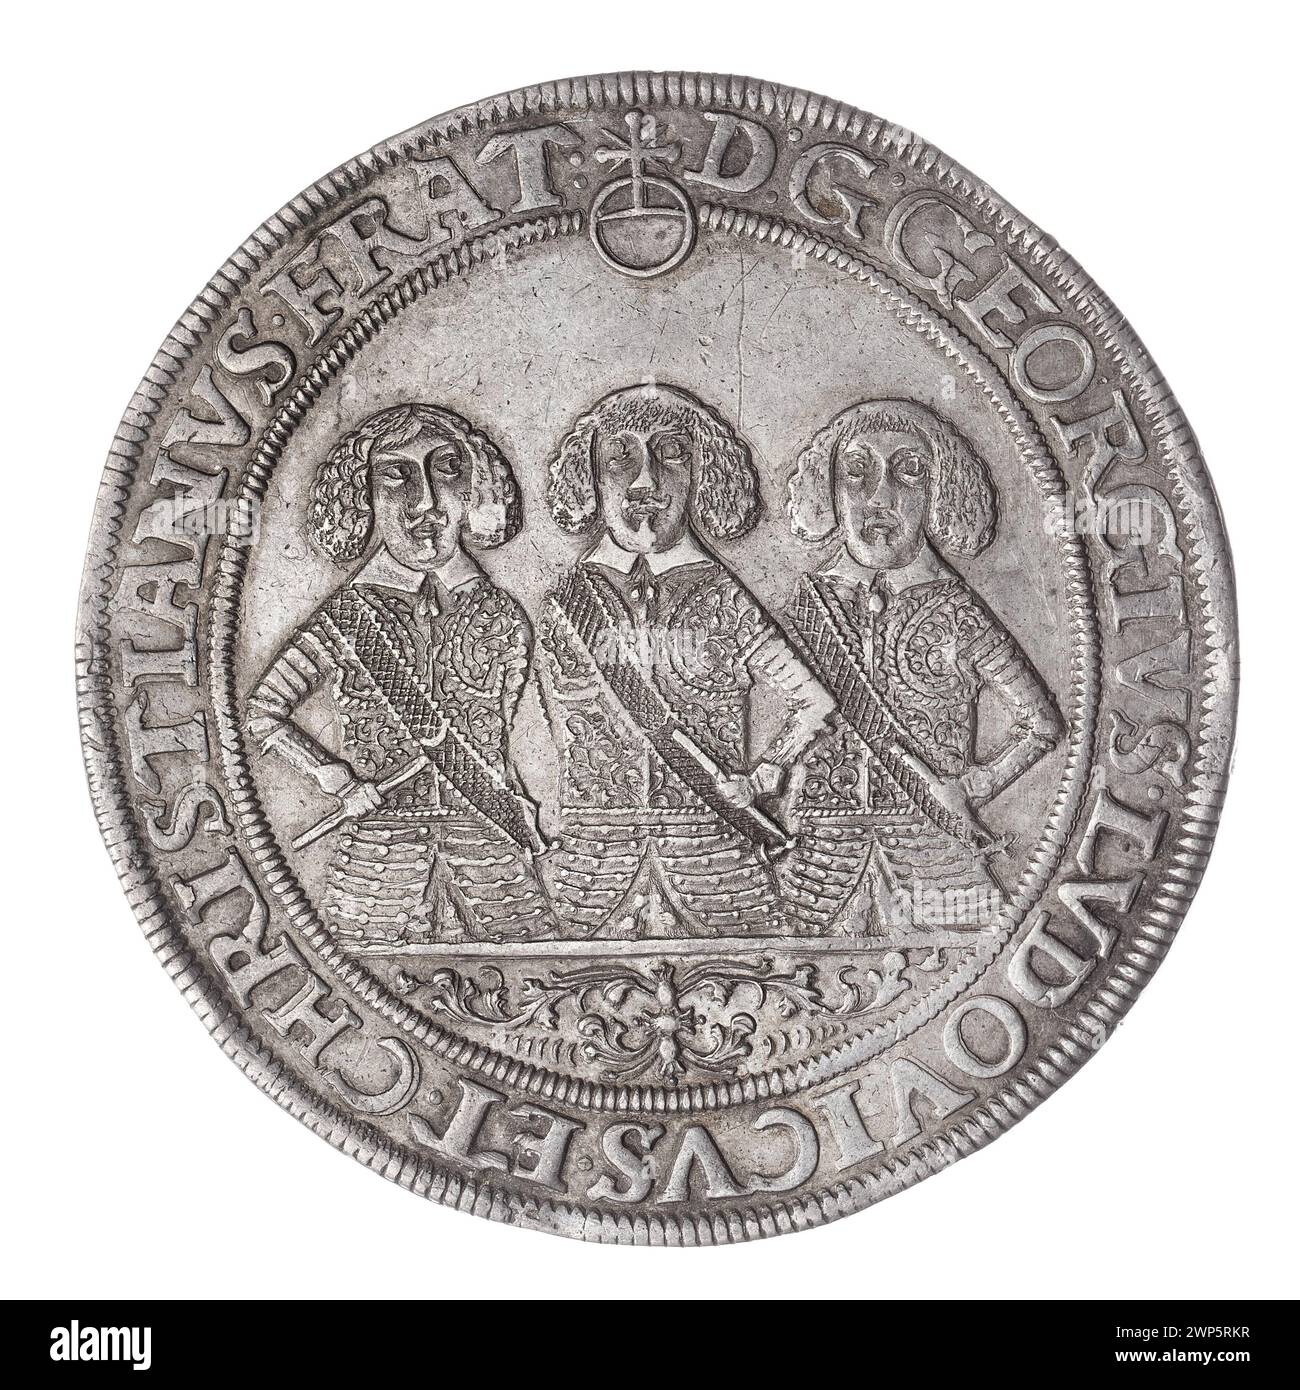 thaler; Jerzy III (ksi Brzesko-Legnicka-Wośowski; 1611-1664), Ludwik IV (KSI Brzesko-Rednicko-Wośców; 1616-1663), Christian (ksi Brzesko-Legnicko-Wośowski; 1618-1672), Pfahler, Christian (fl. 1651-1665); 1657 (1657 1616-00-00-1657 1663-00); Christian (Fürst von Brest-Legnicka-Wołowski-1618-1672), Christian (Fürst von Brest-Legnicki-Wołowski-1618-1672)-Ikonographie, Jerzy III (Fürst von Brest-Legnicka--1611-1664), Jerzy III (Fürst und Legnica-Fürst 1663 - 1611-1664) - Ikonographie, Ludwik IV (Fürst Legnicki - 1616) Stockfoto